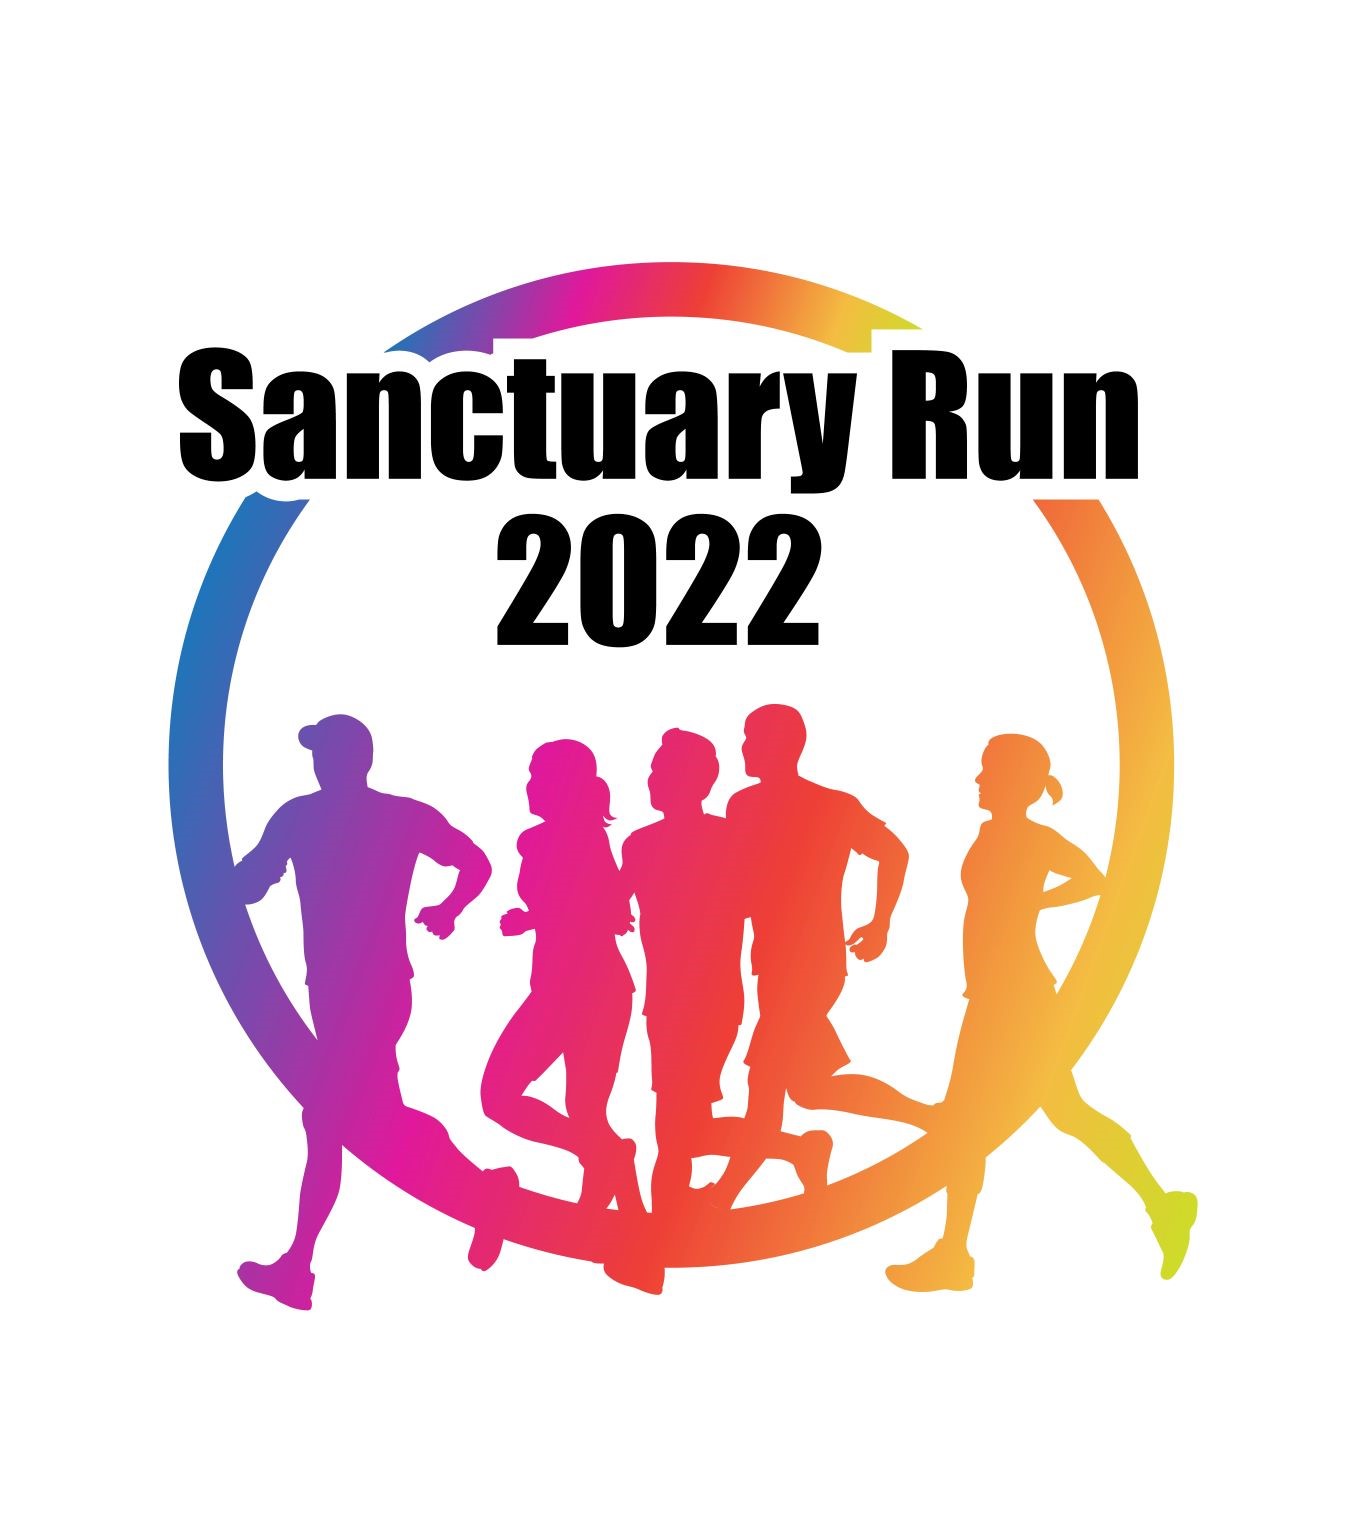 Sport Ireland Campus to host ‘Sanctuary Run 2022’ in June